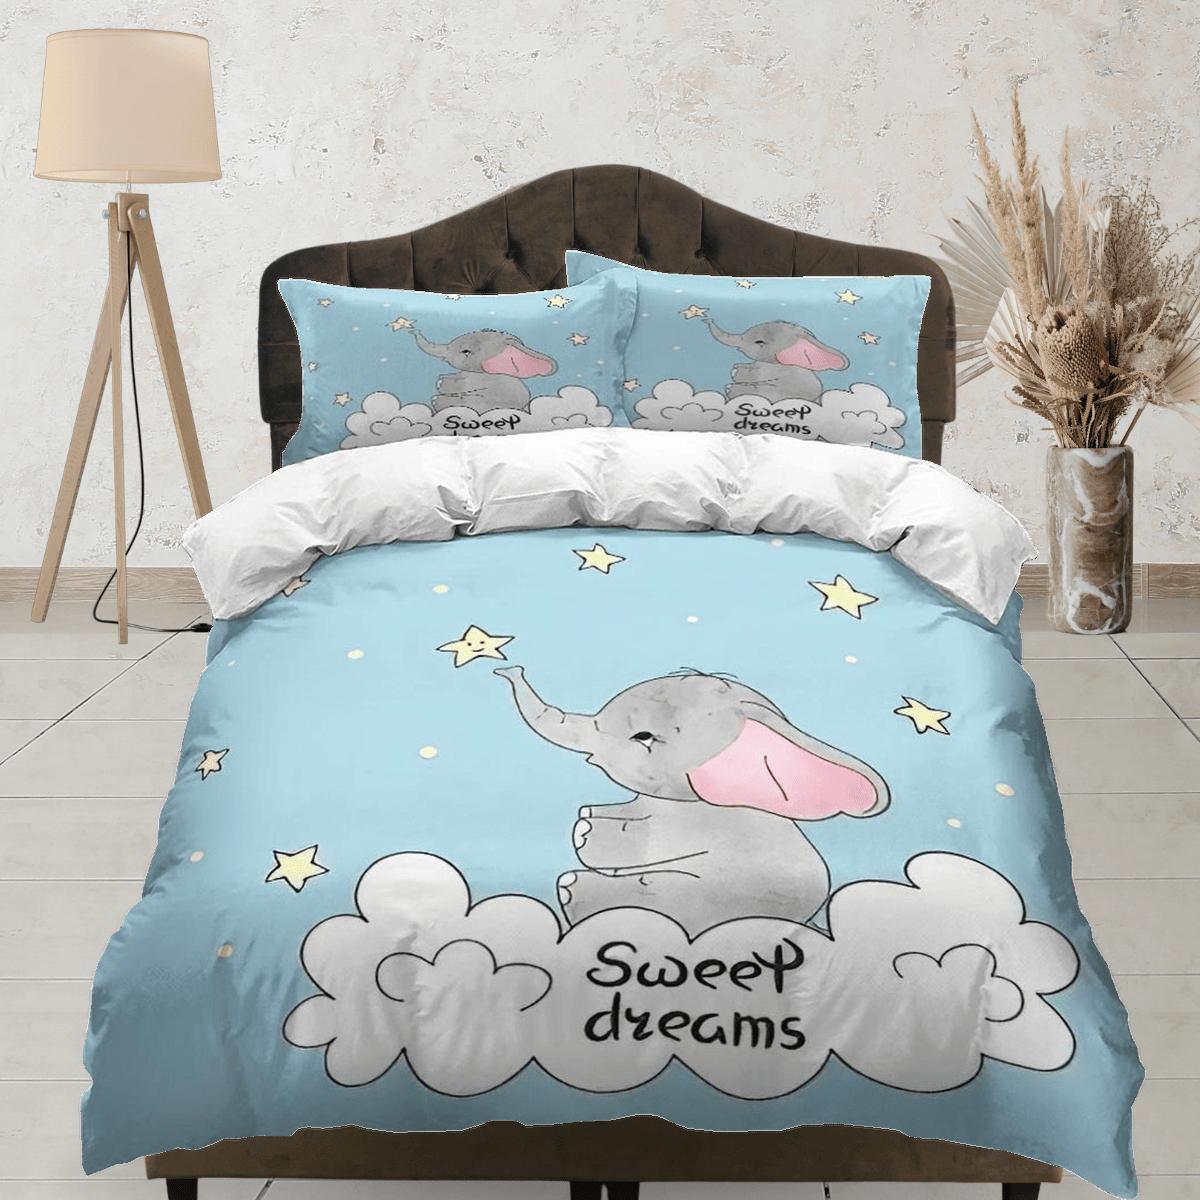 daintyduvet Sweet dreams elephant light blue bedding cute duvet cover set, kids bedding full, nursery bed decor, elephant baby shower, toddler bedding